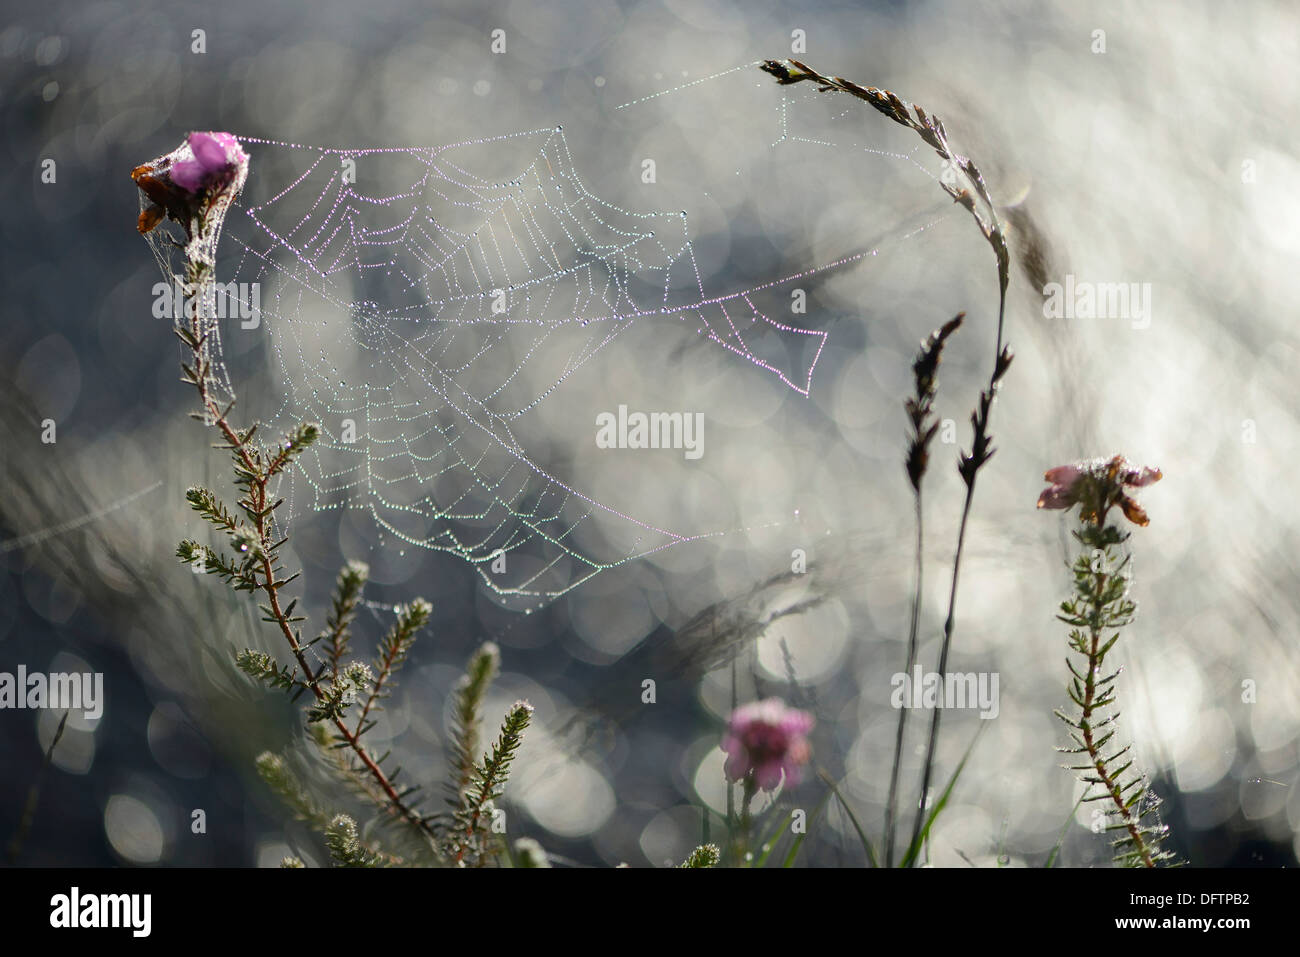 Spider's Web en contre-leaved heath (Erica tetralix), Theikenmeer Haren-landegge, réserve naturelle, de l'Ems, Basse-Saxe, Allemagne Banque D'Images